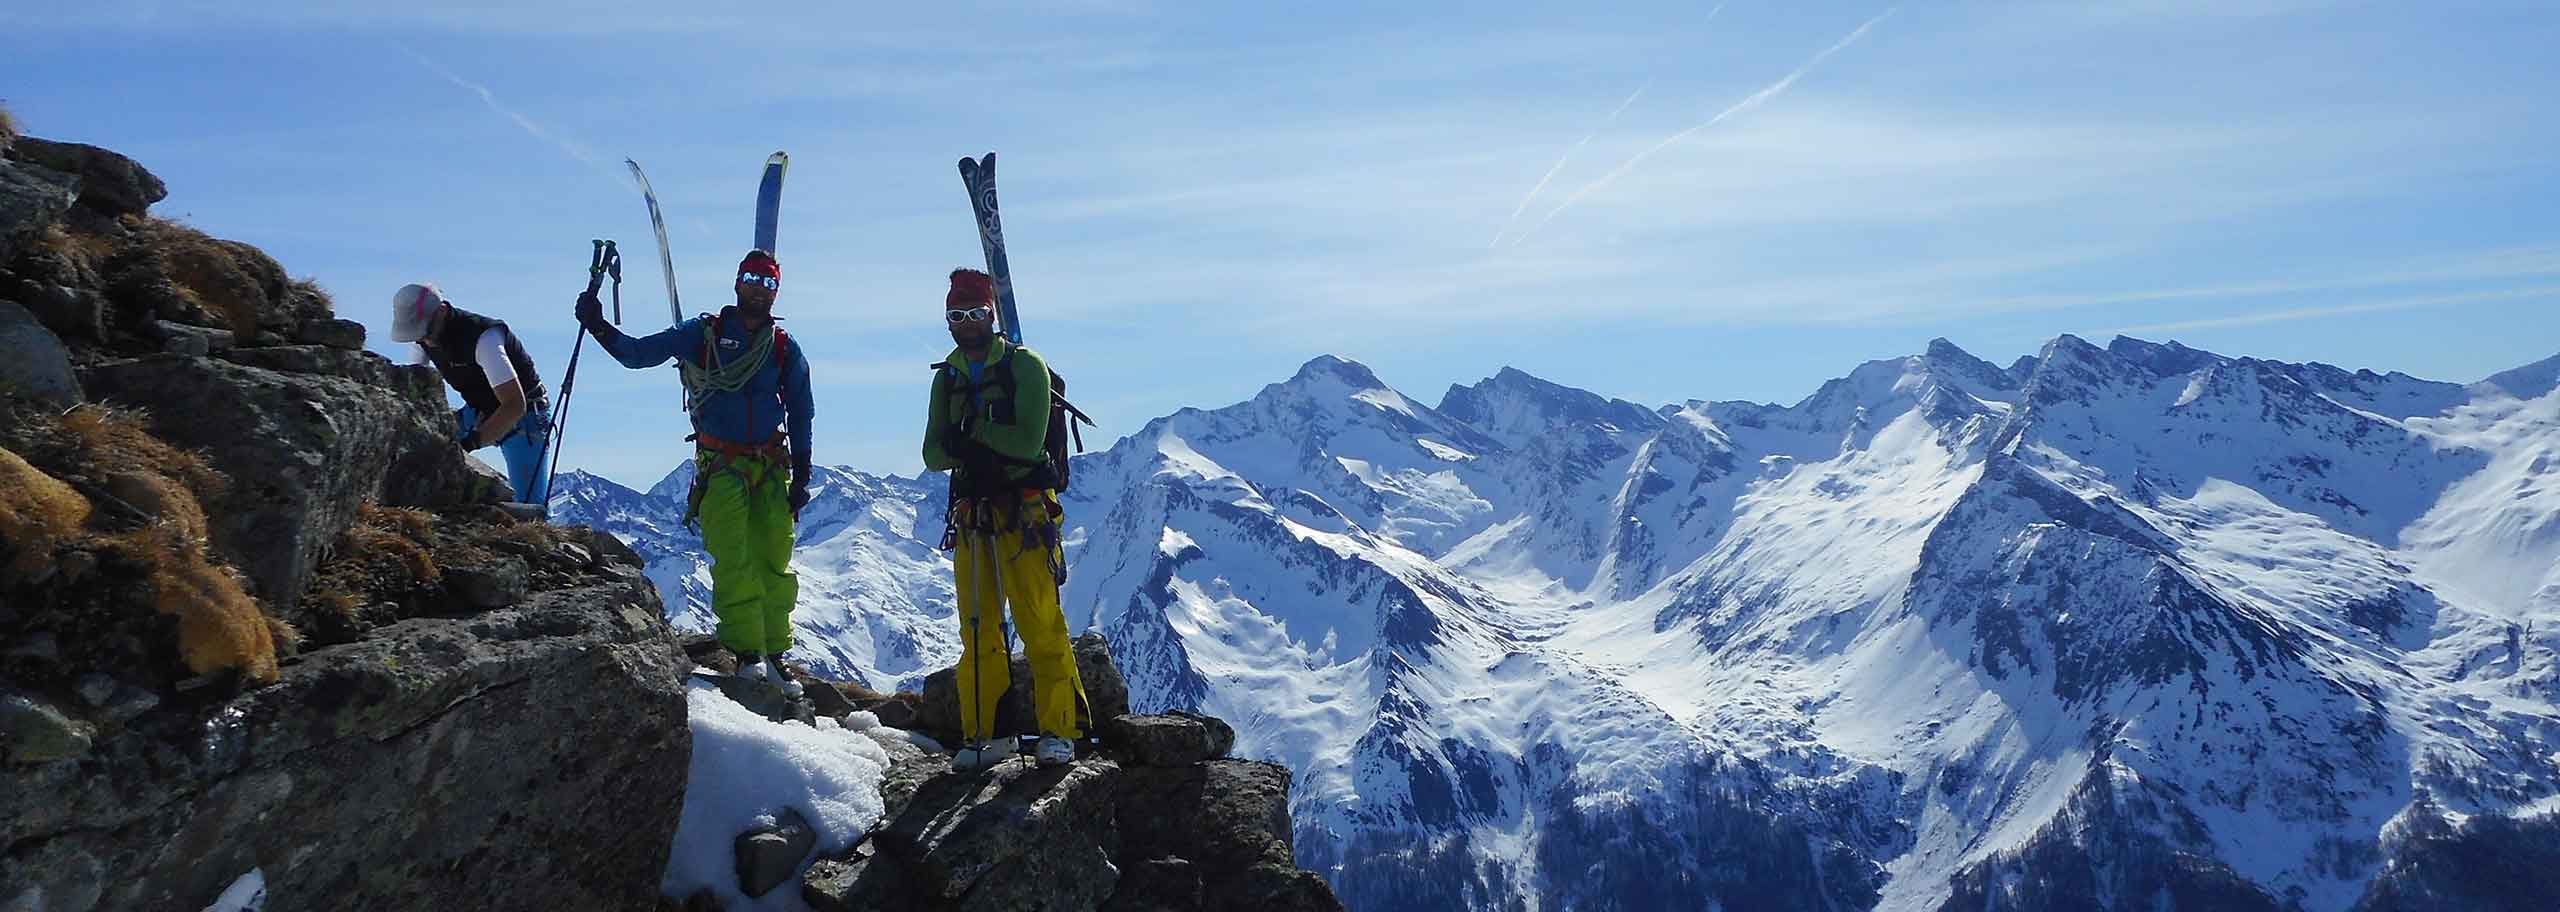 Ski Mountaineering in Valle Aurina & Tures, Ski Touring Trips